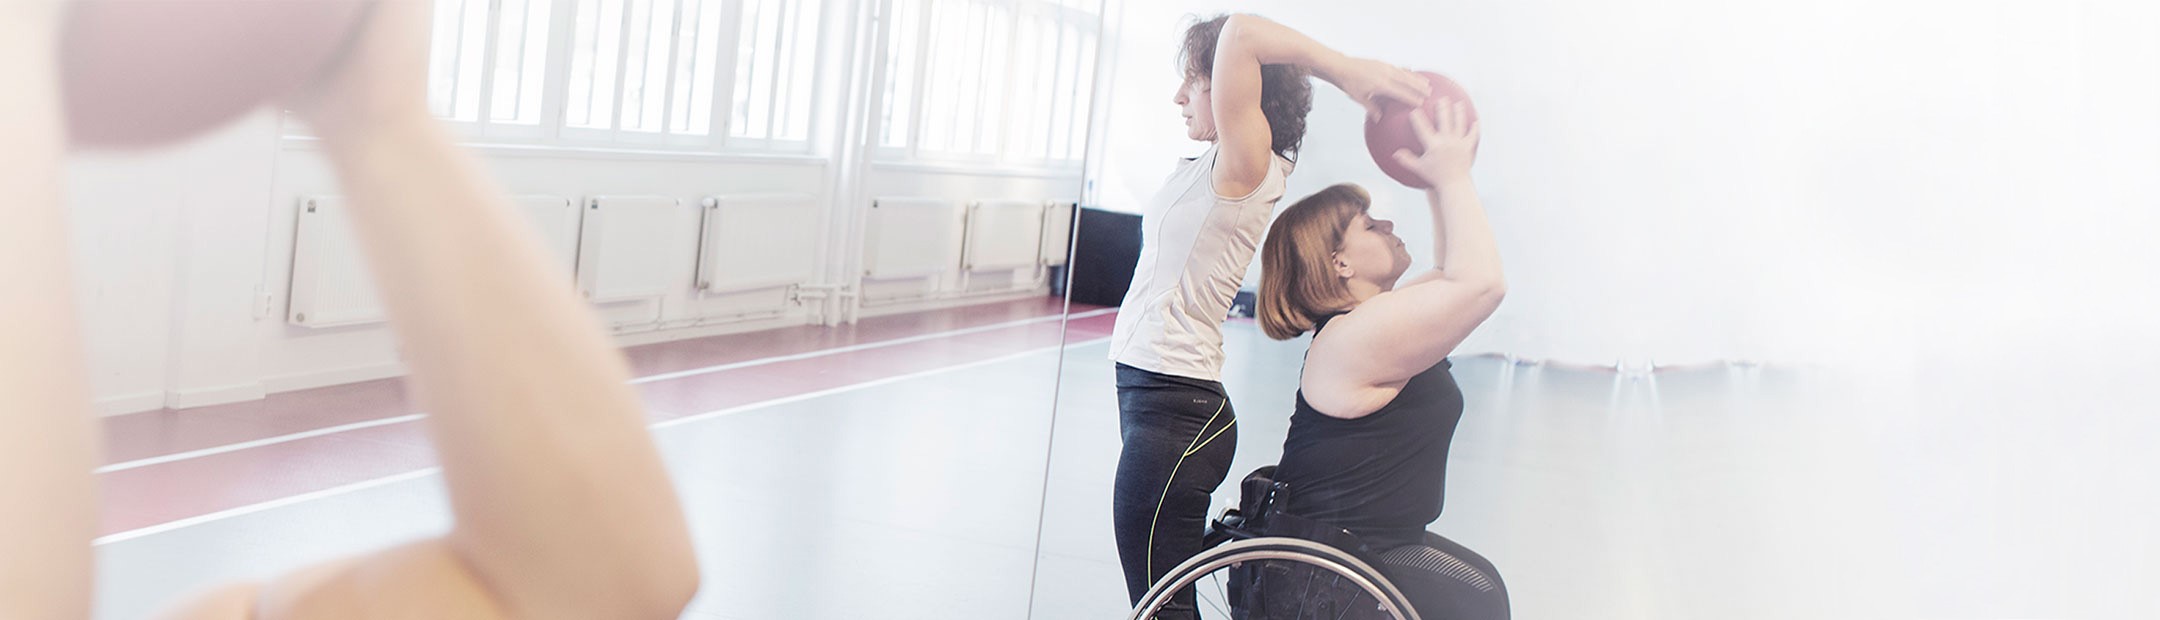 I en träningssal med spegelvägg, en stående kvinna och en kvinna som sitter i rullstol är placerade rygg mot rygg och för en boll mellan sig över bådas huvuden.